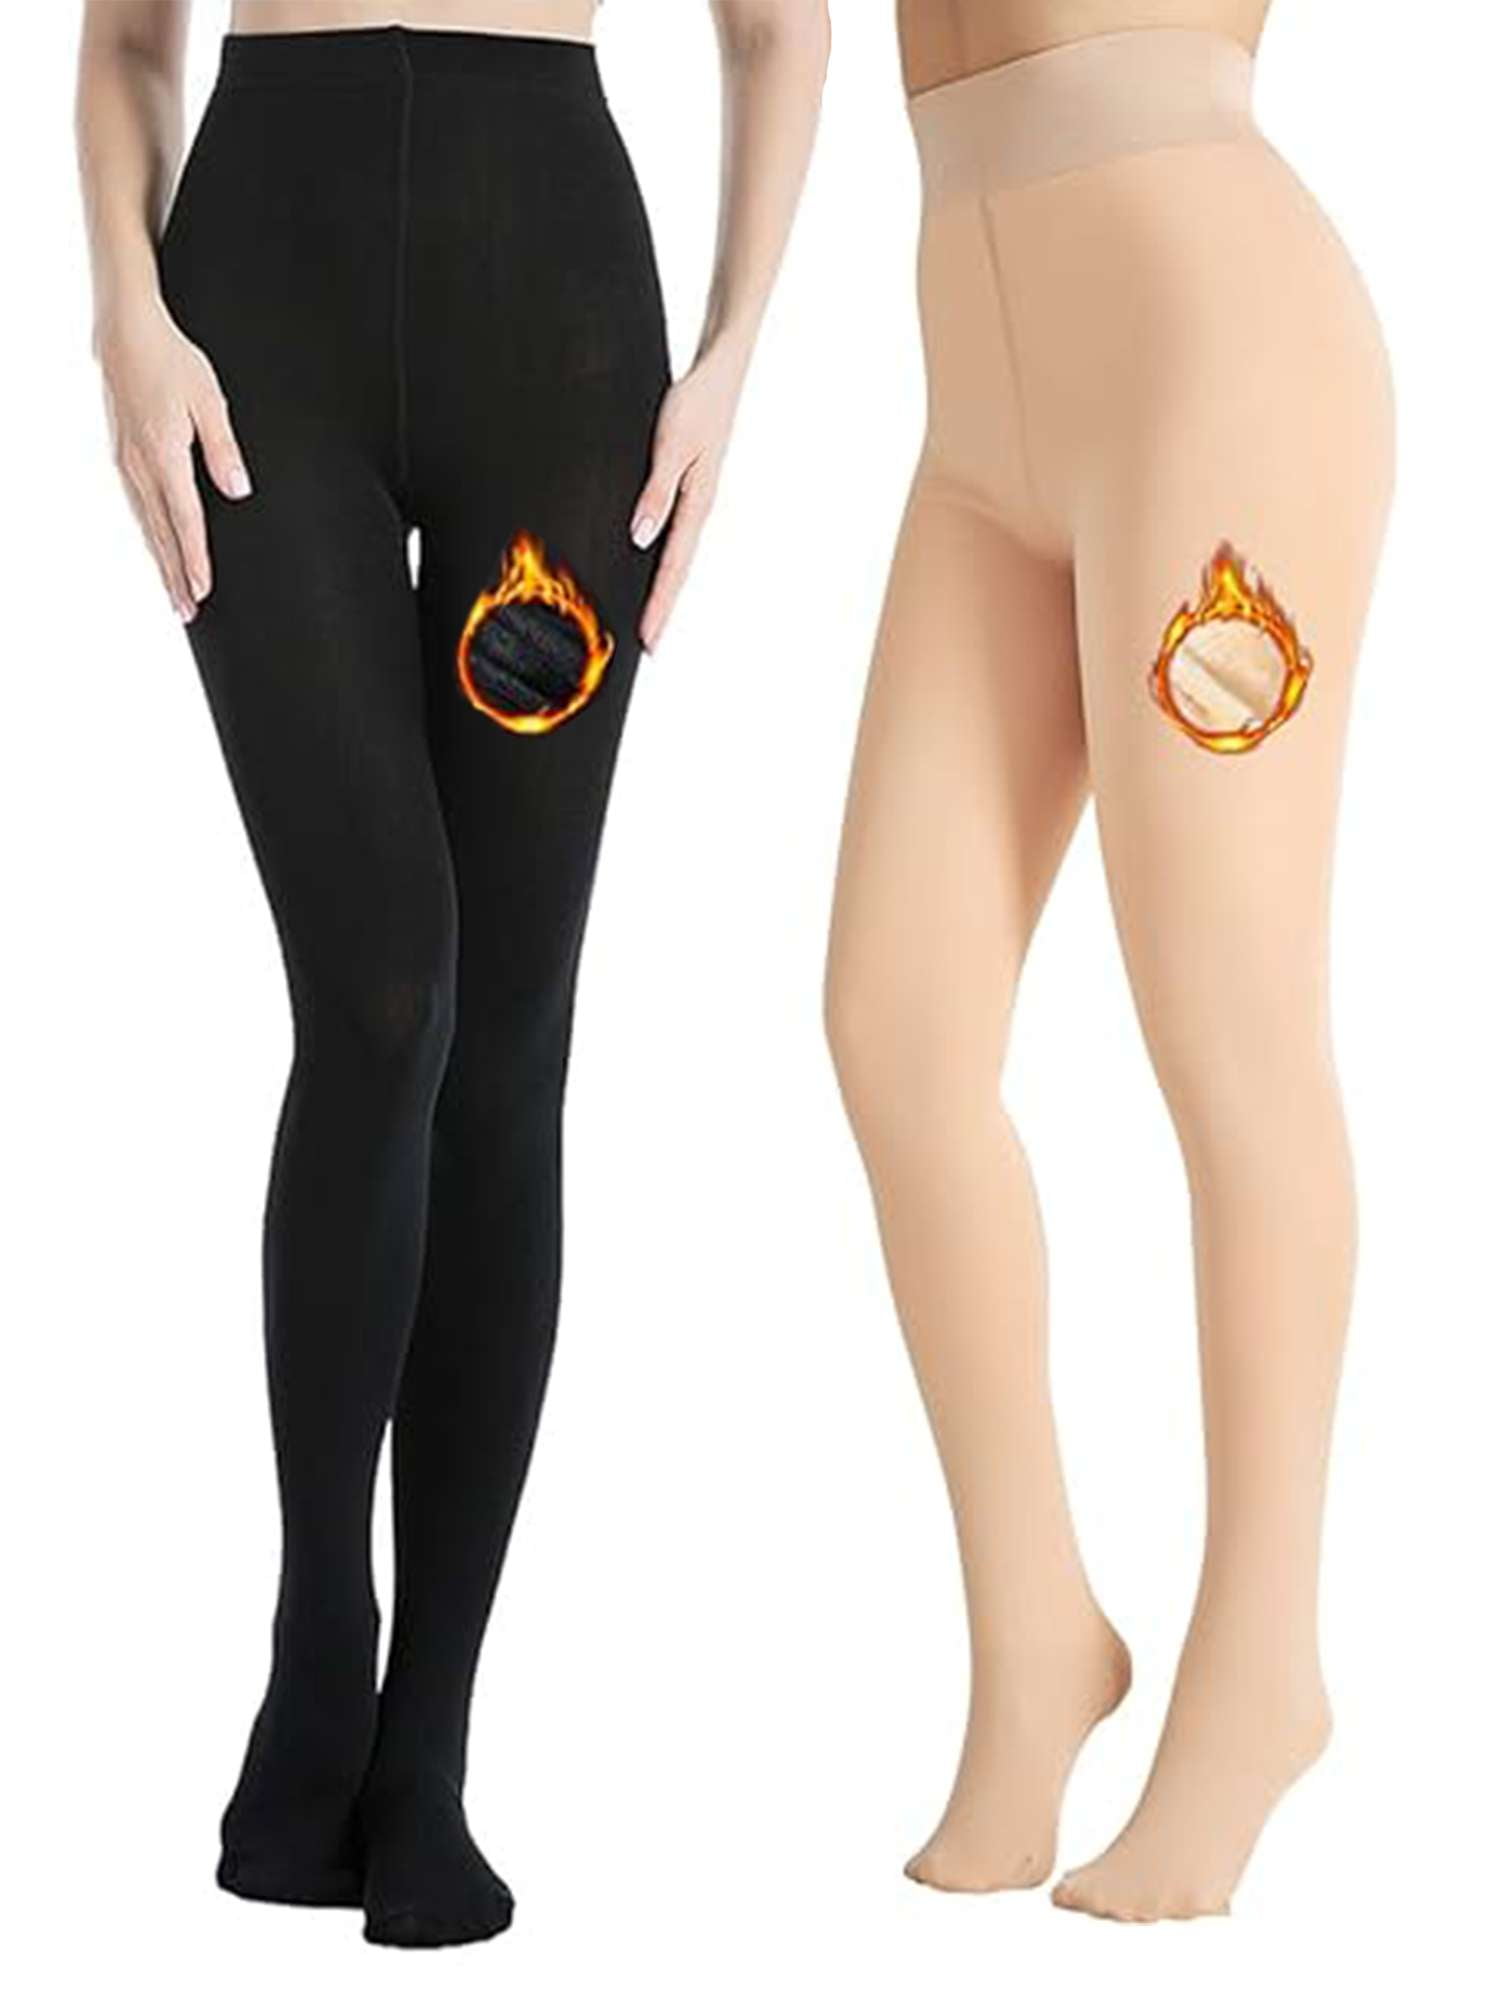 Ladies Thermal Leggings Fleece Lined Black 4.9 TOG Womens Winter Warm 1  Pair